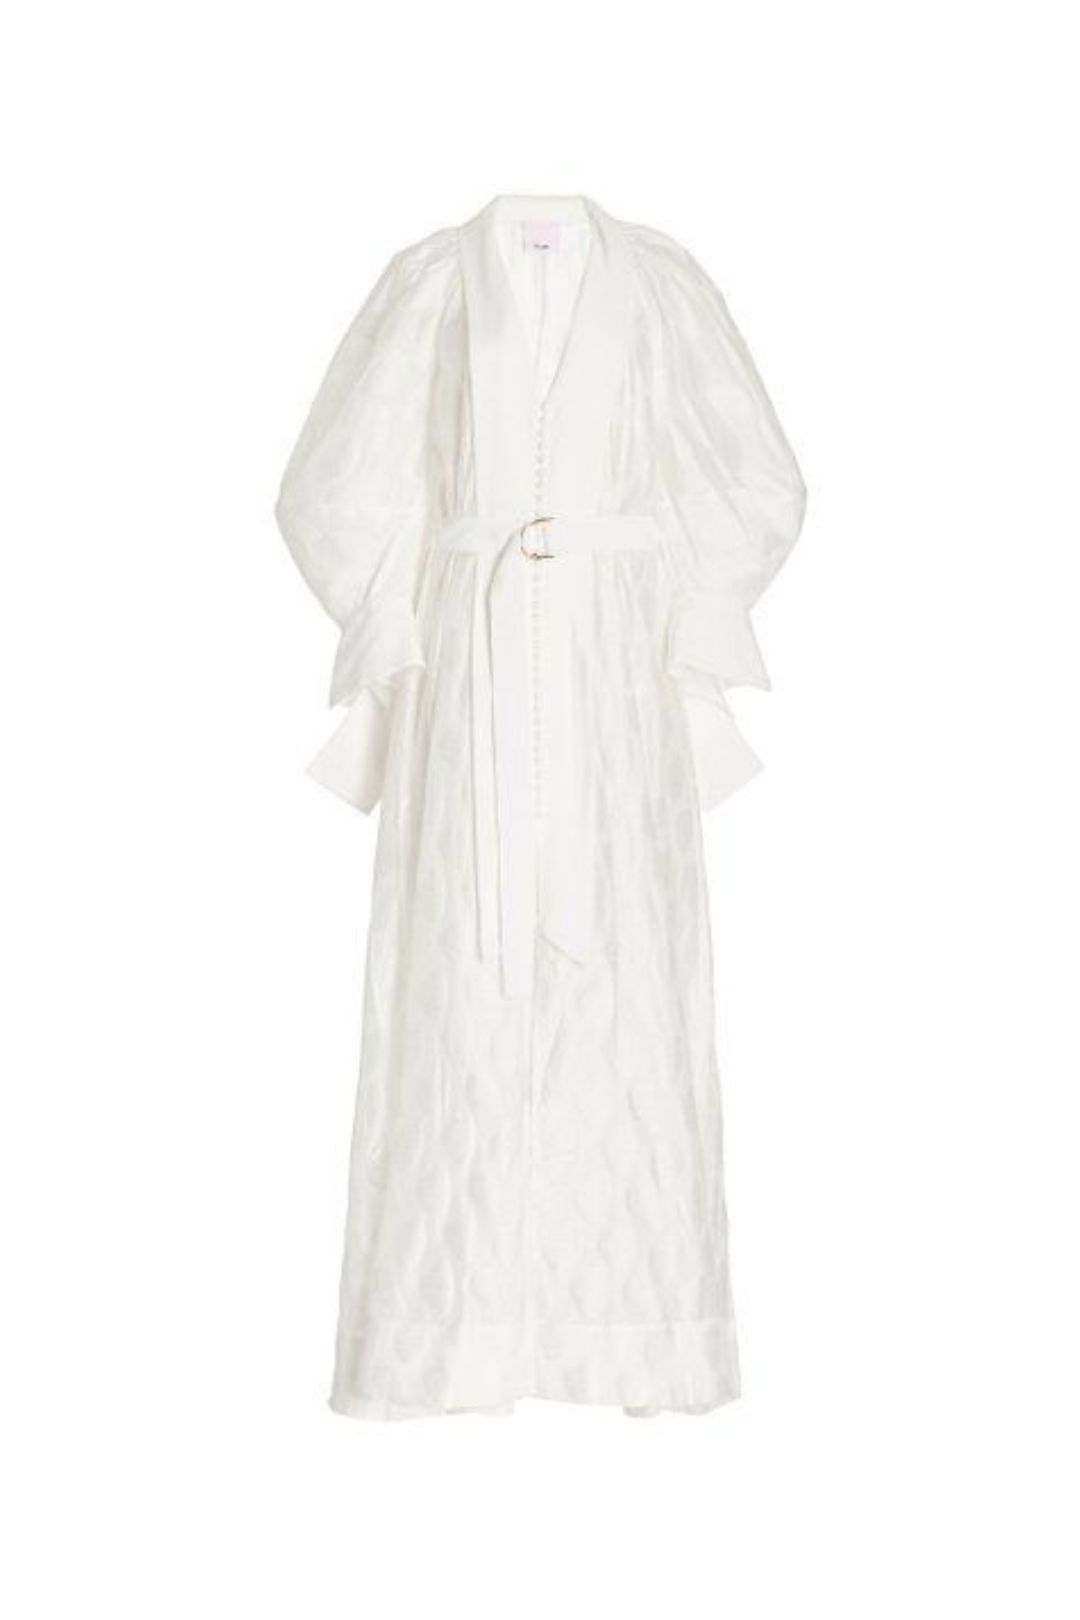 Acler Parker Dress white 